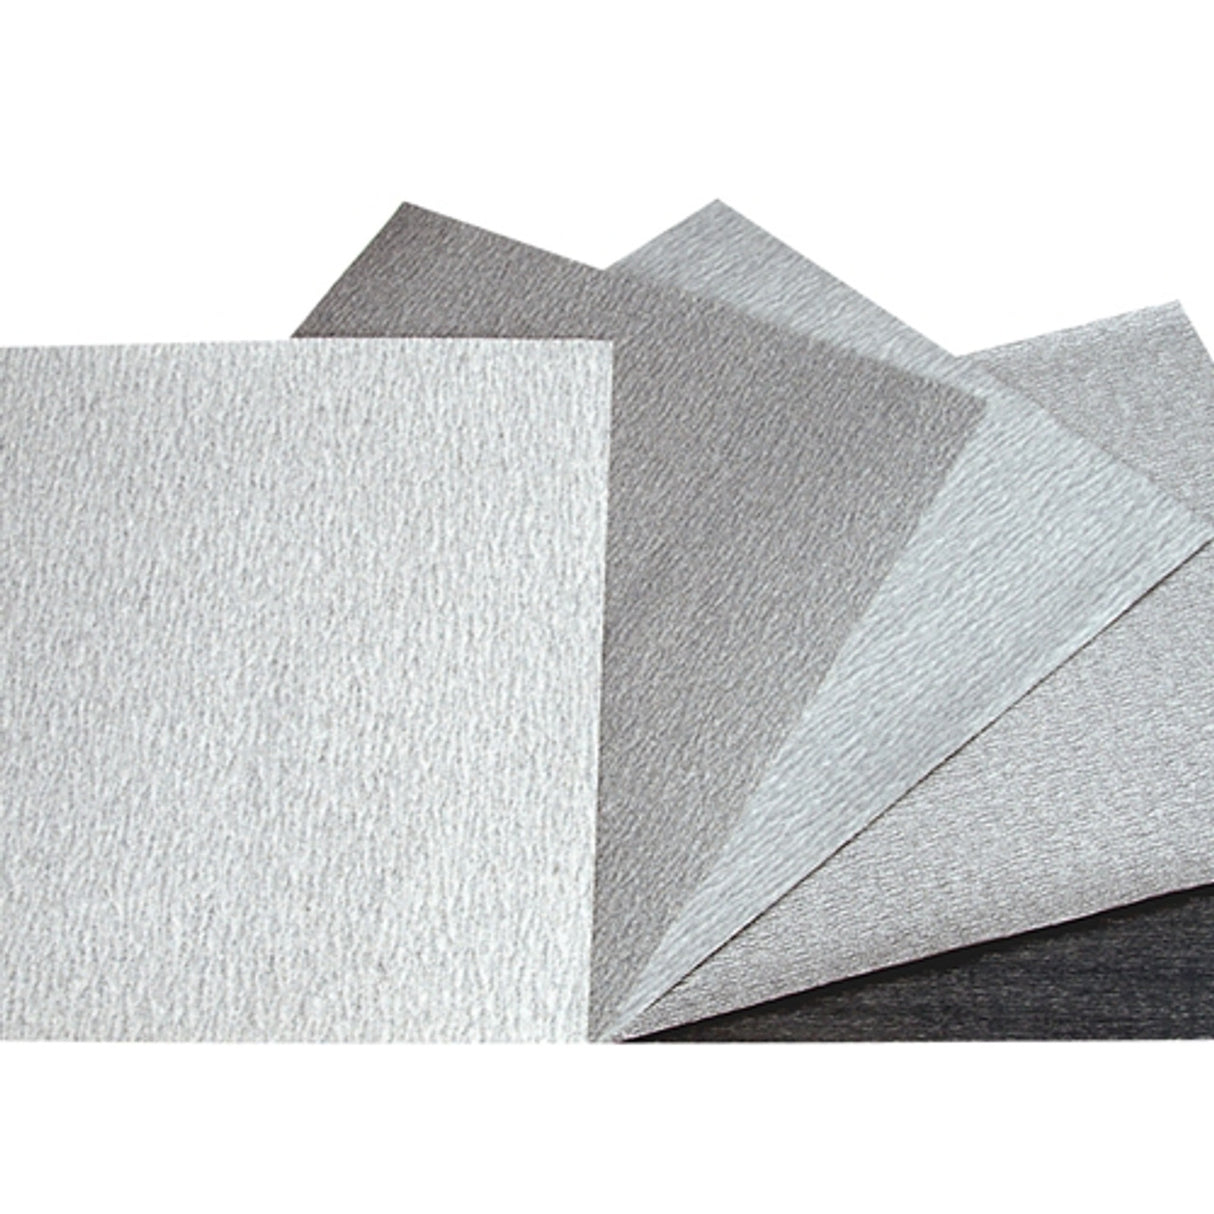 Norton® Durite Abrasive Paper (Pkg. of 5)